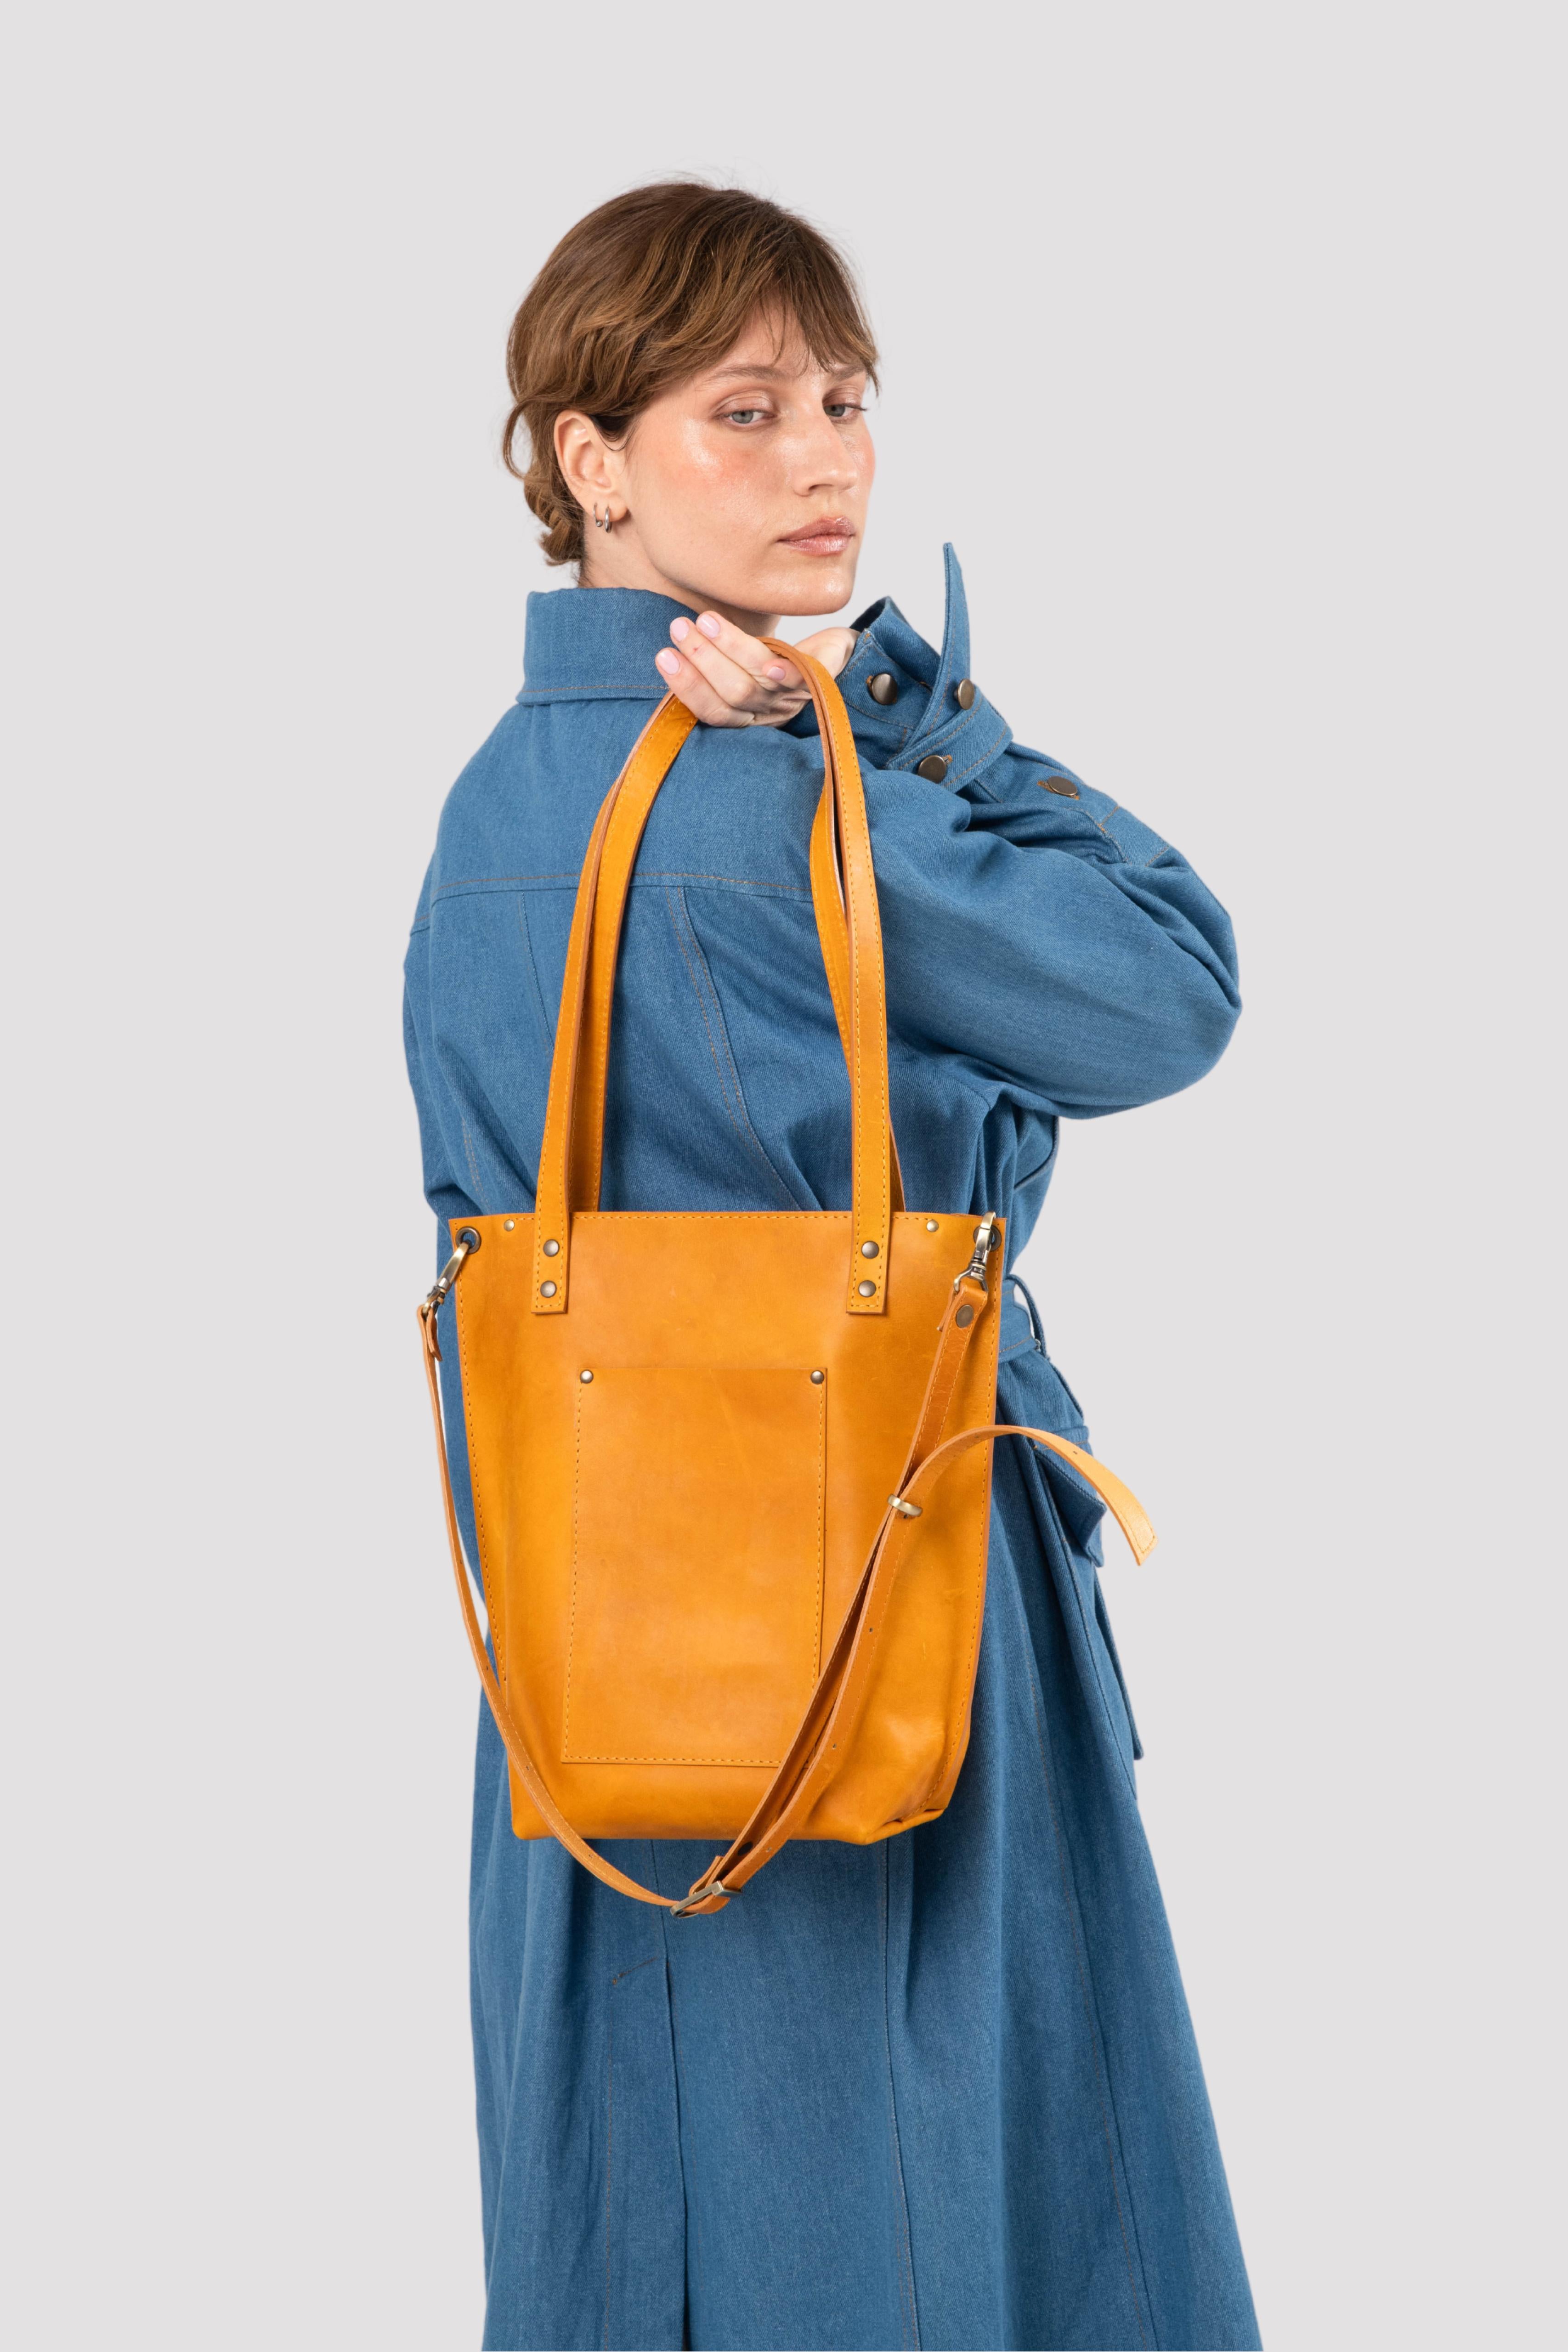 Genuine Leather Backpack Purse Satchel Handbag 15''Laptop Bag Book Bag  Travel L | eBay